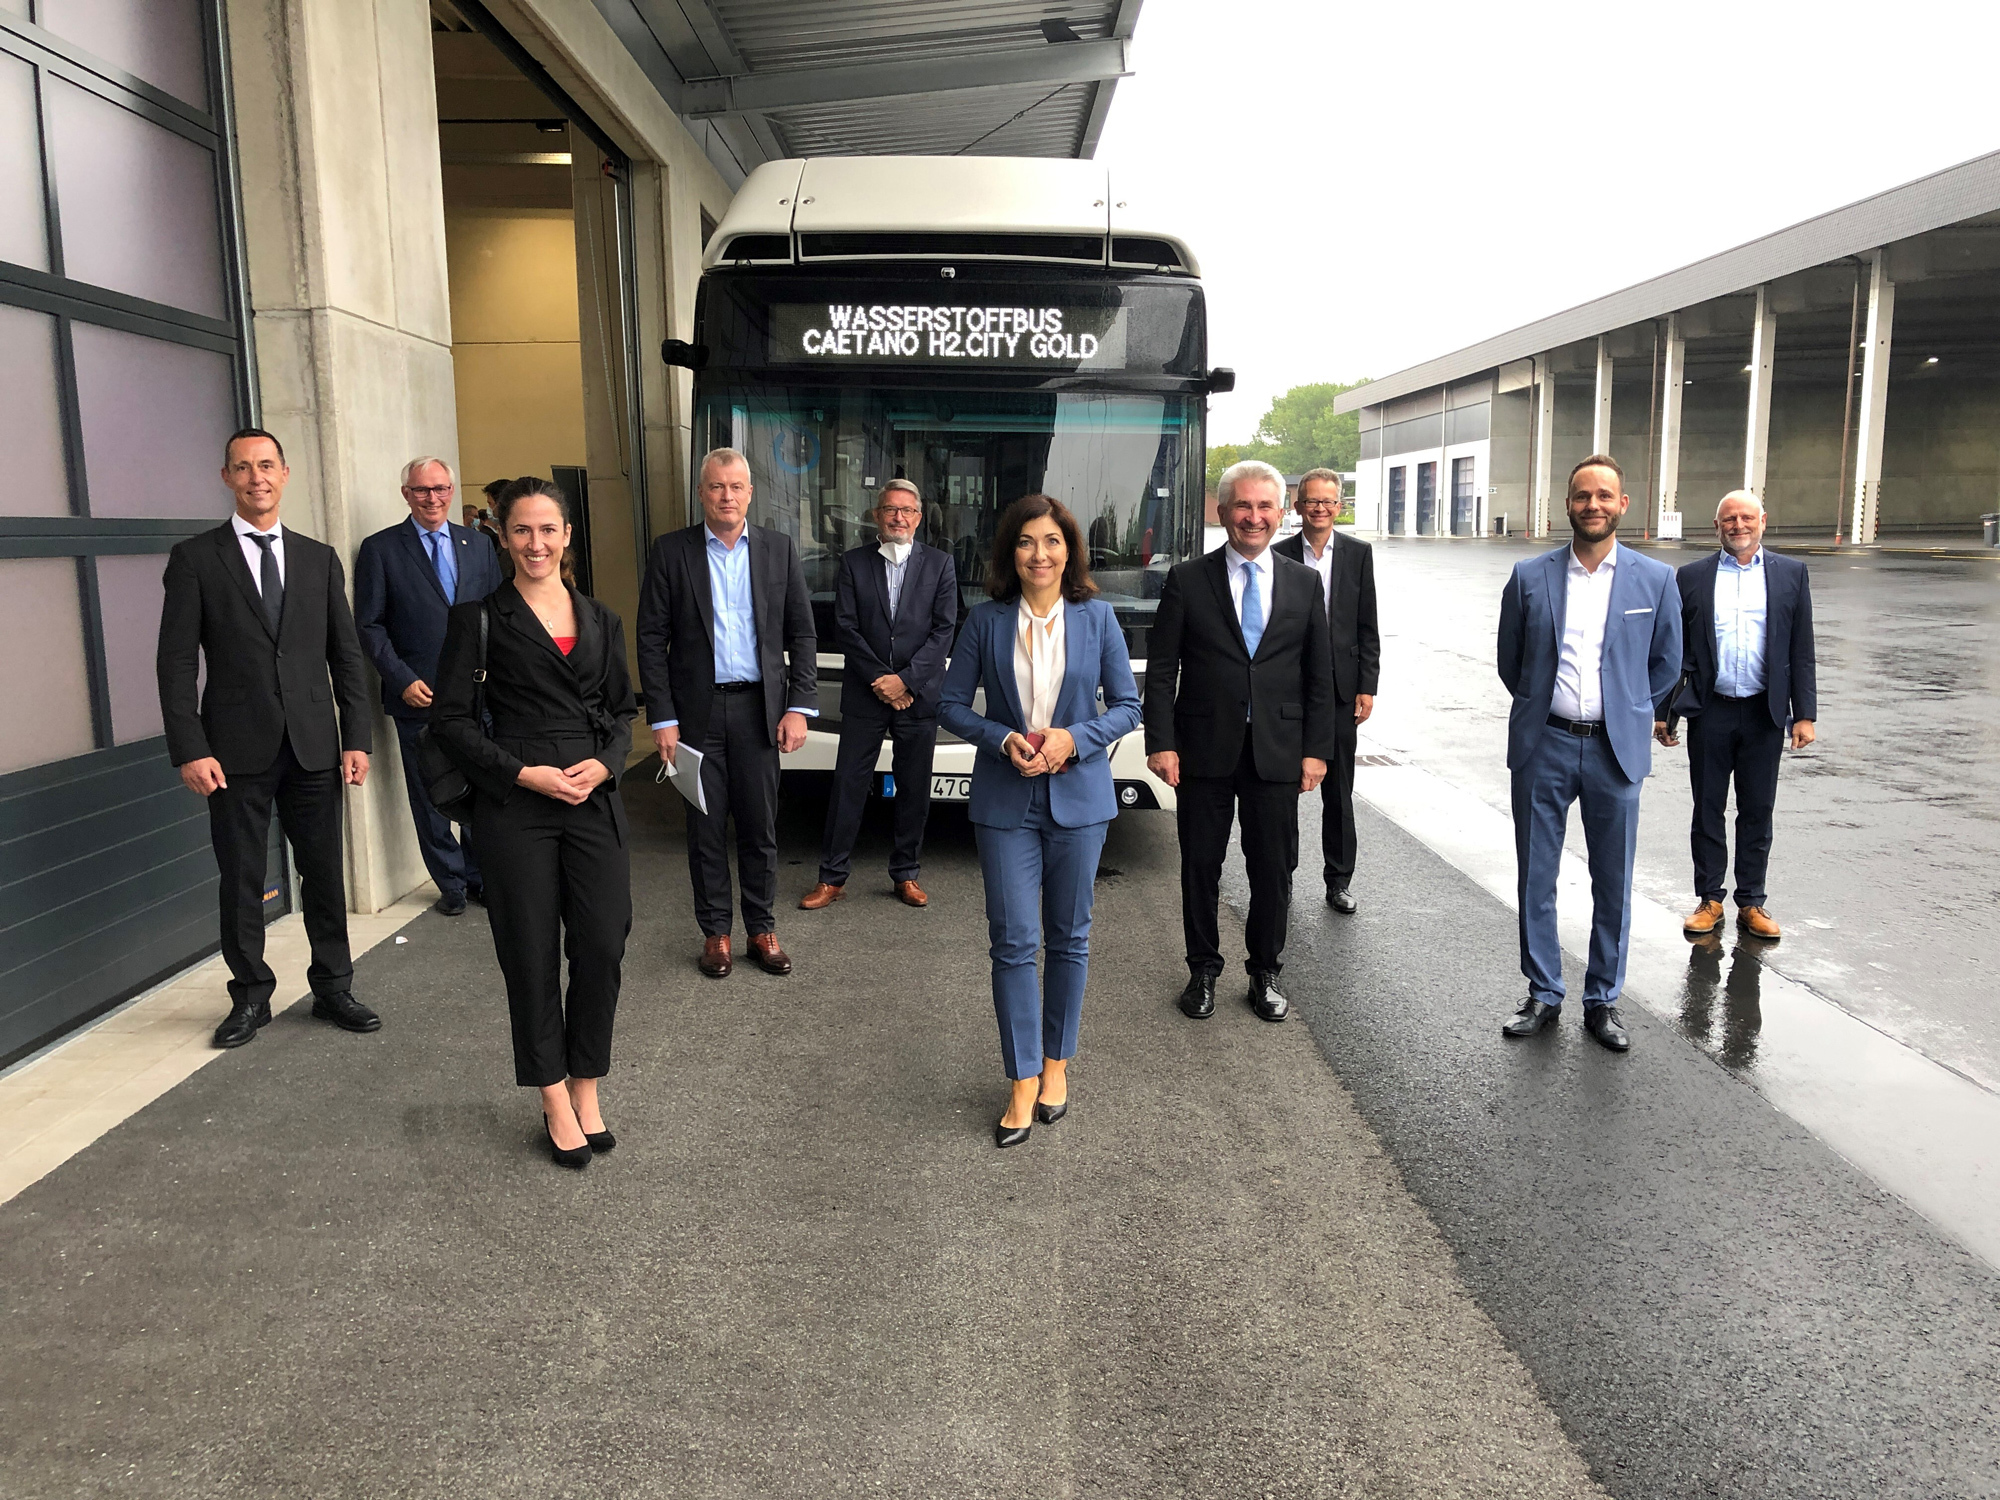 Auf dem REVG Betriebshof: Vor einem Wasserstoffbus stehen mehrere Menschen, darunter die Geschäftsführung der REVG, der Verkehrsminister NRW und  der Stadt Kerpen.